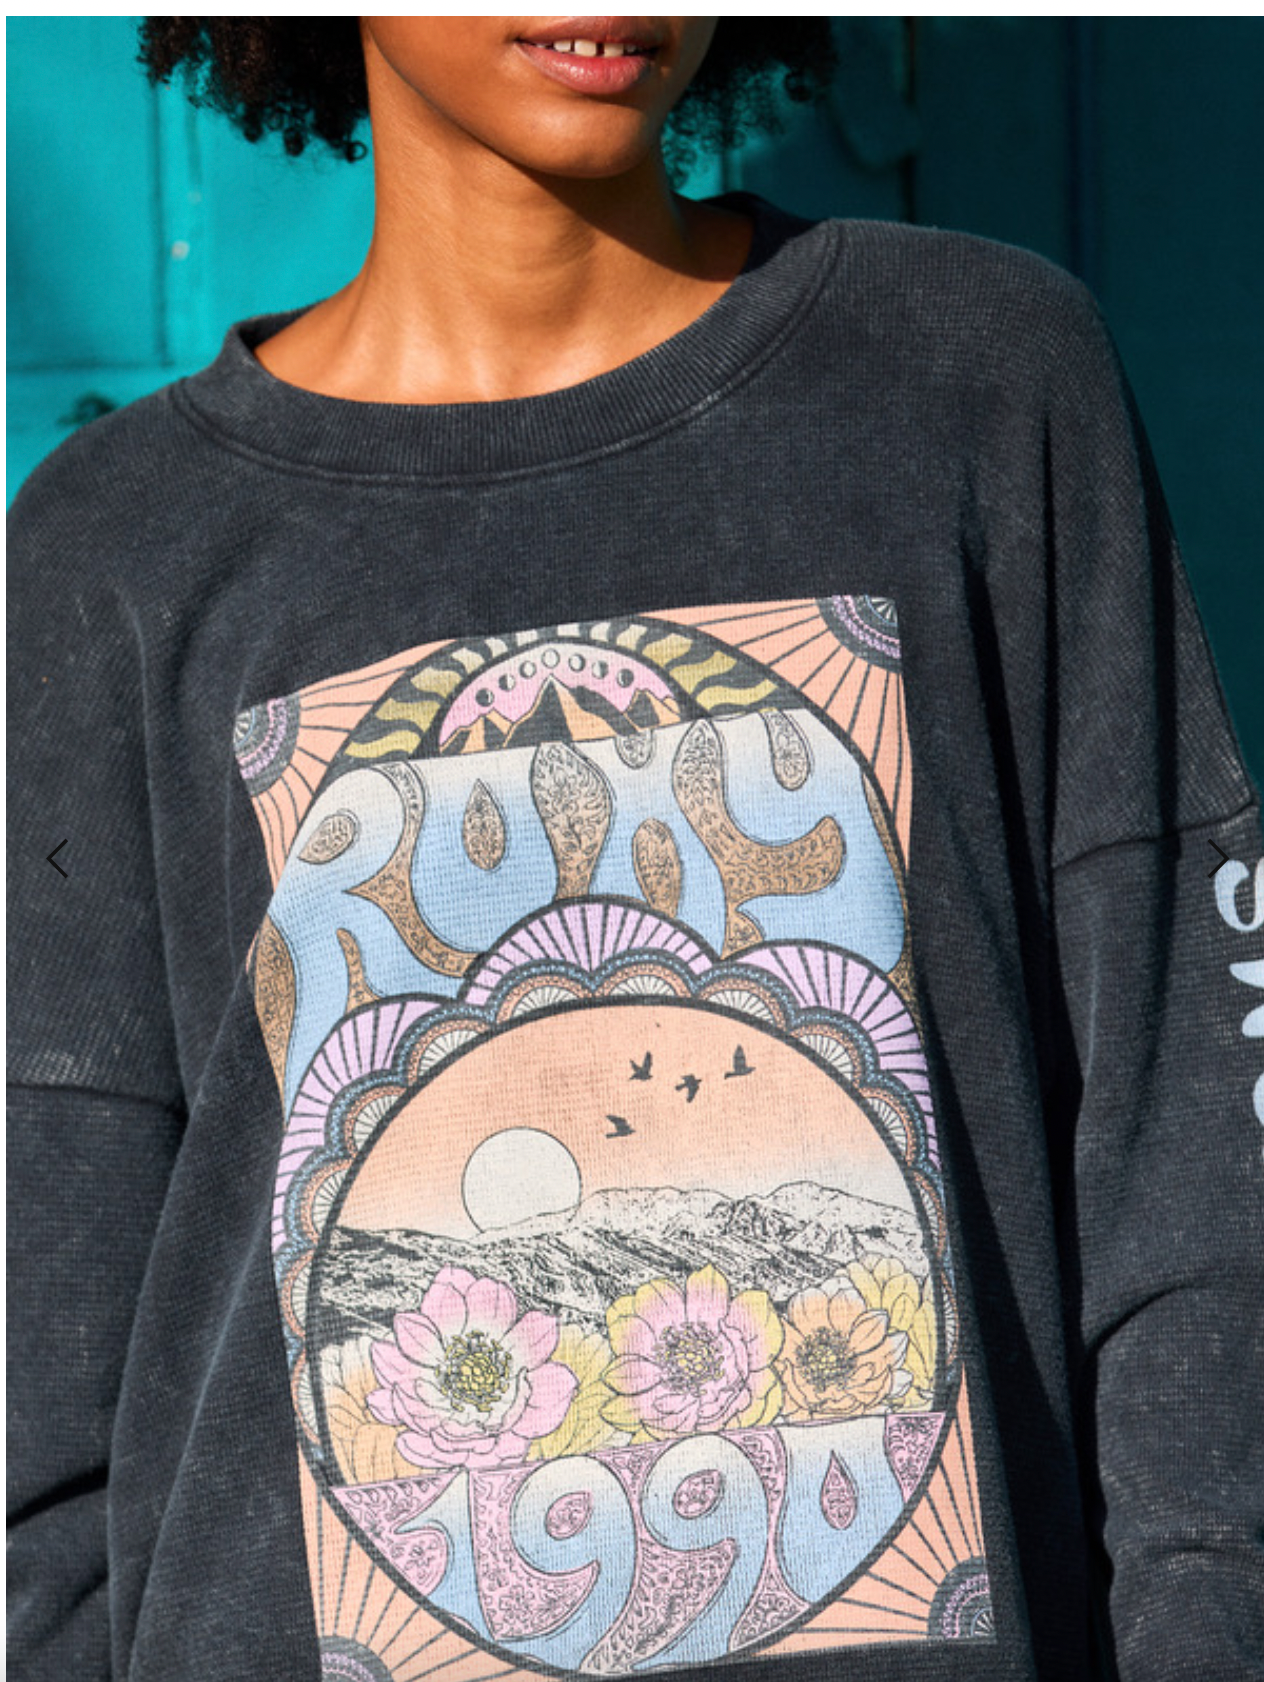 ROXY East Side - Long Sleeve Sweatshirt for Women